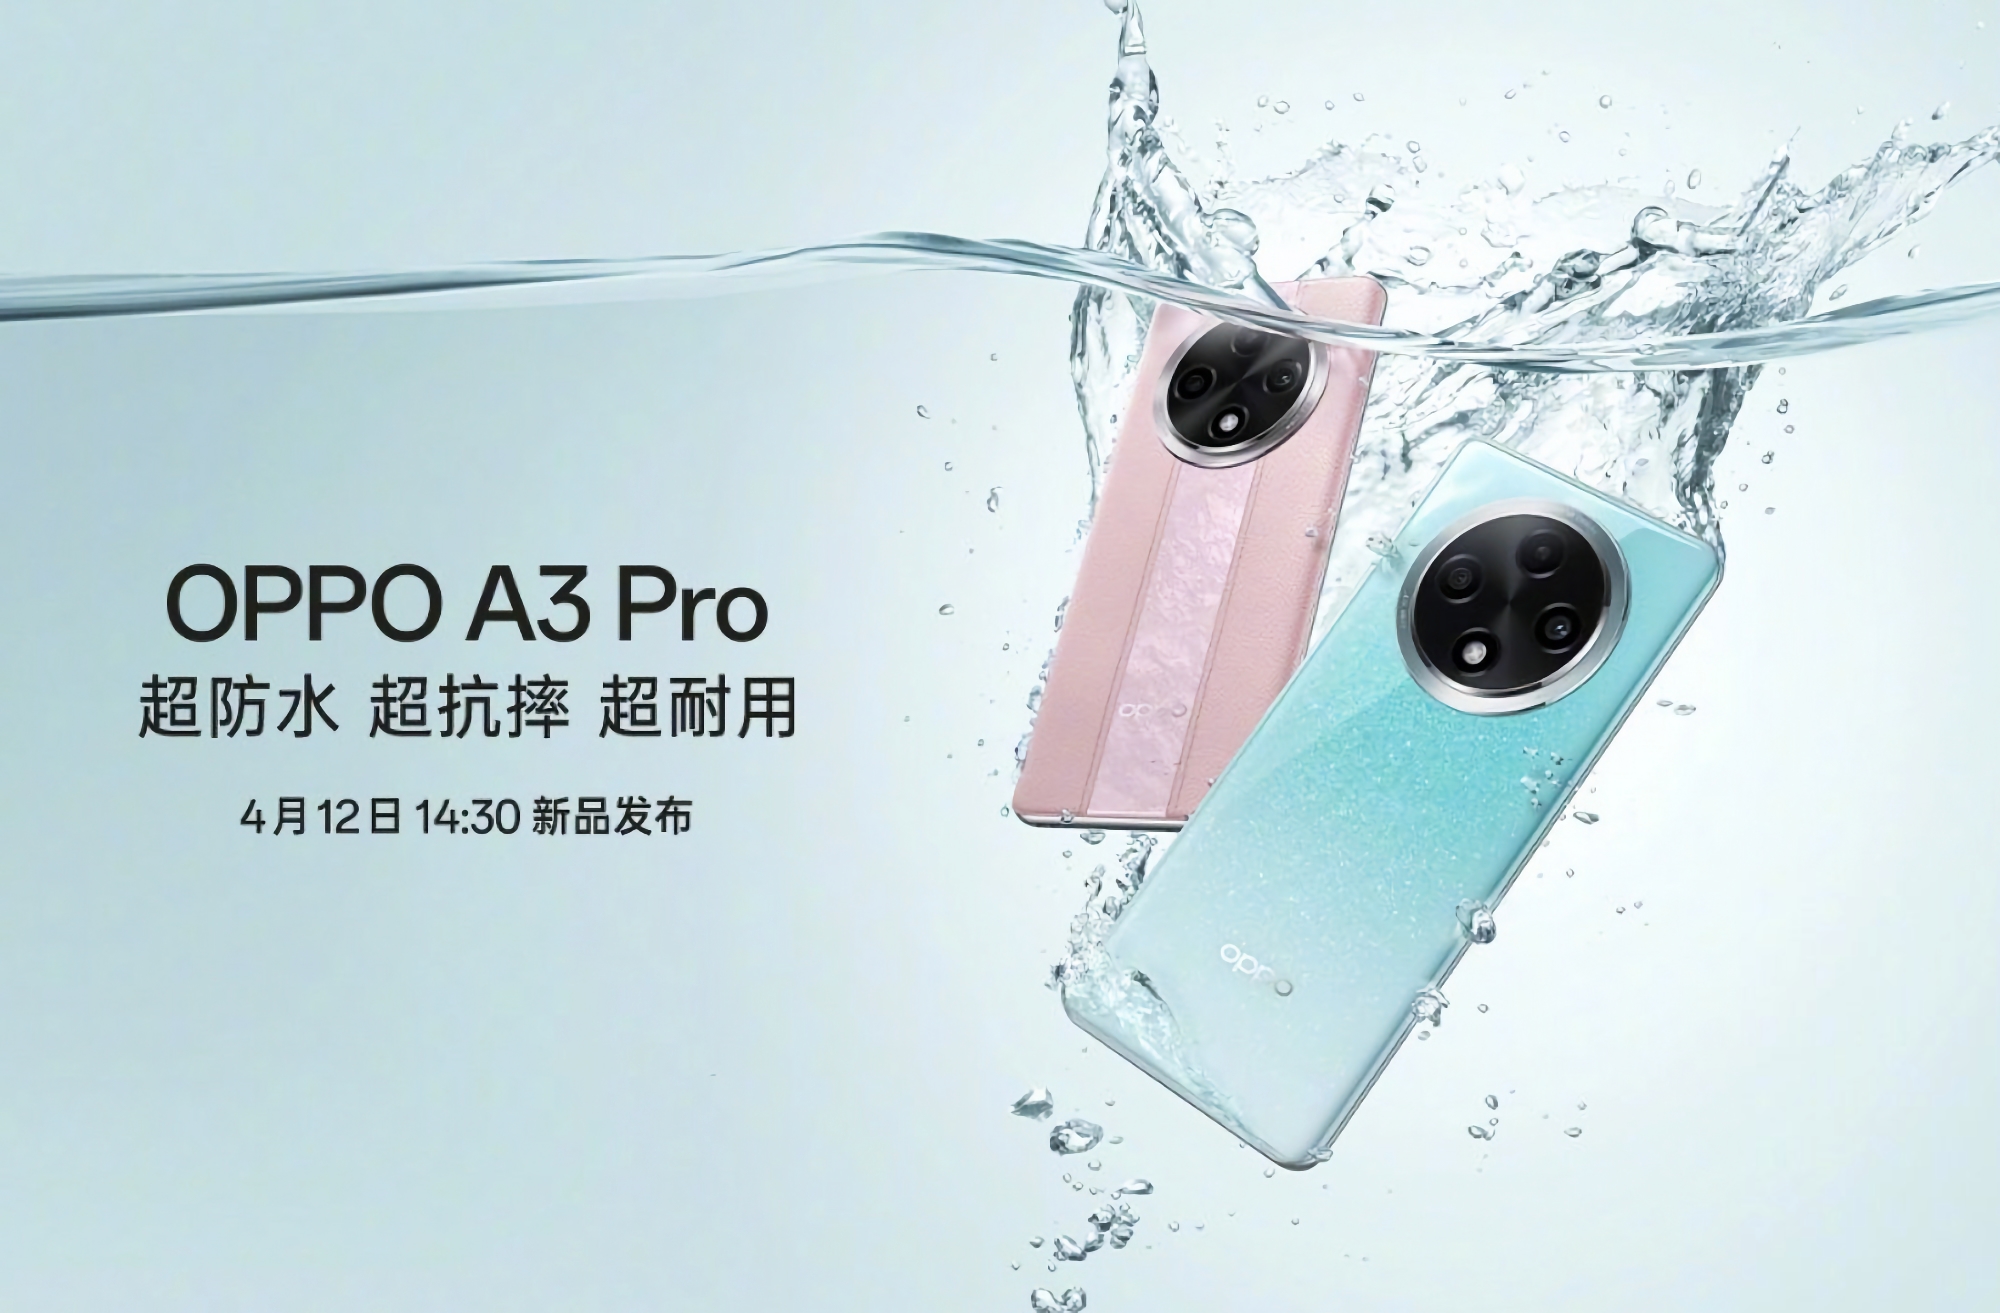 C'est officiel : L'OPPO A3 Pro fera ses débuts le 12 avril